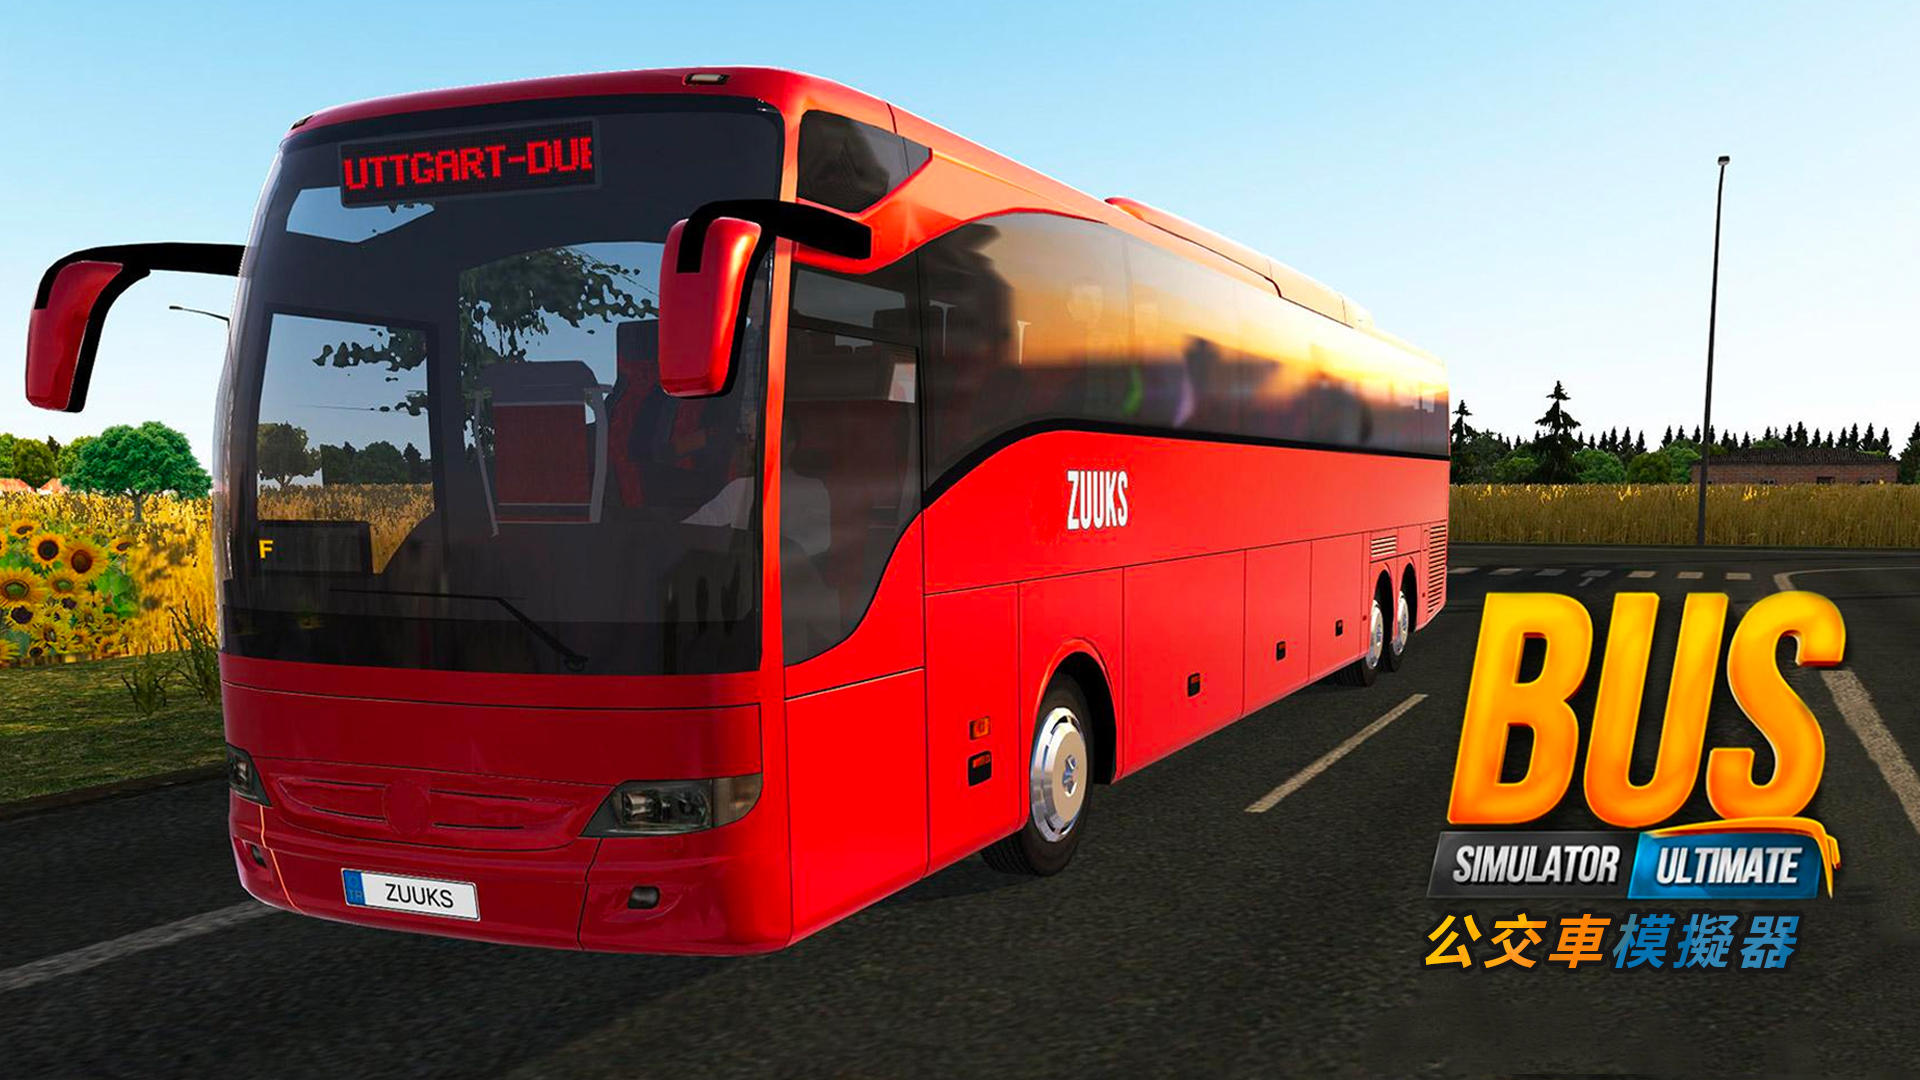 公交车模拟器 : Ultimate游戏截图